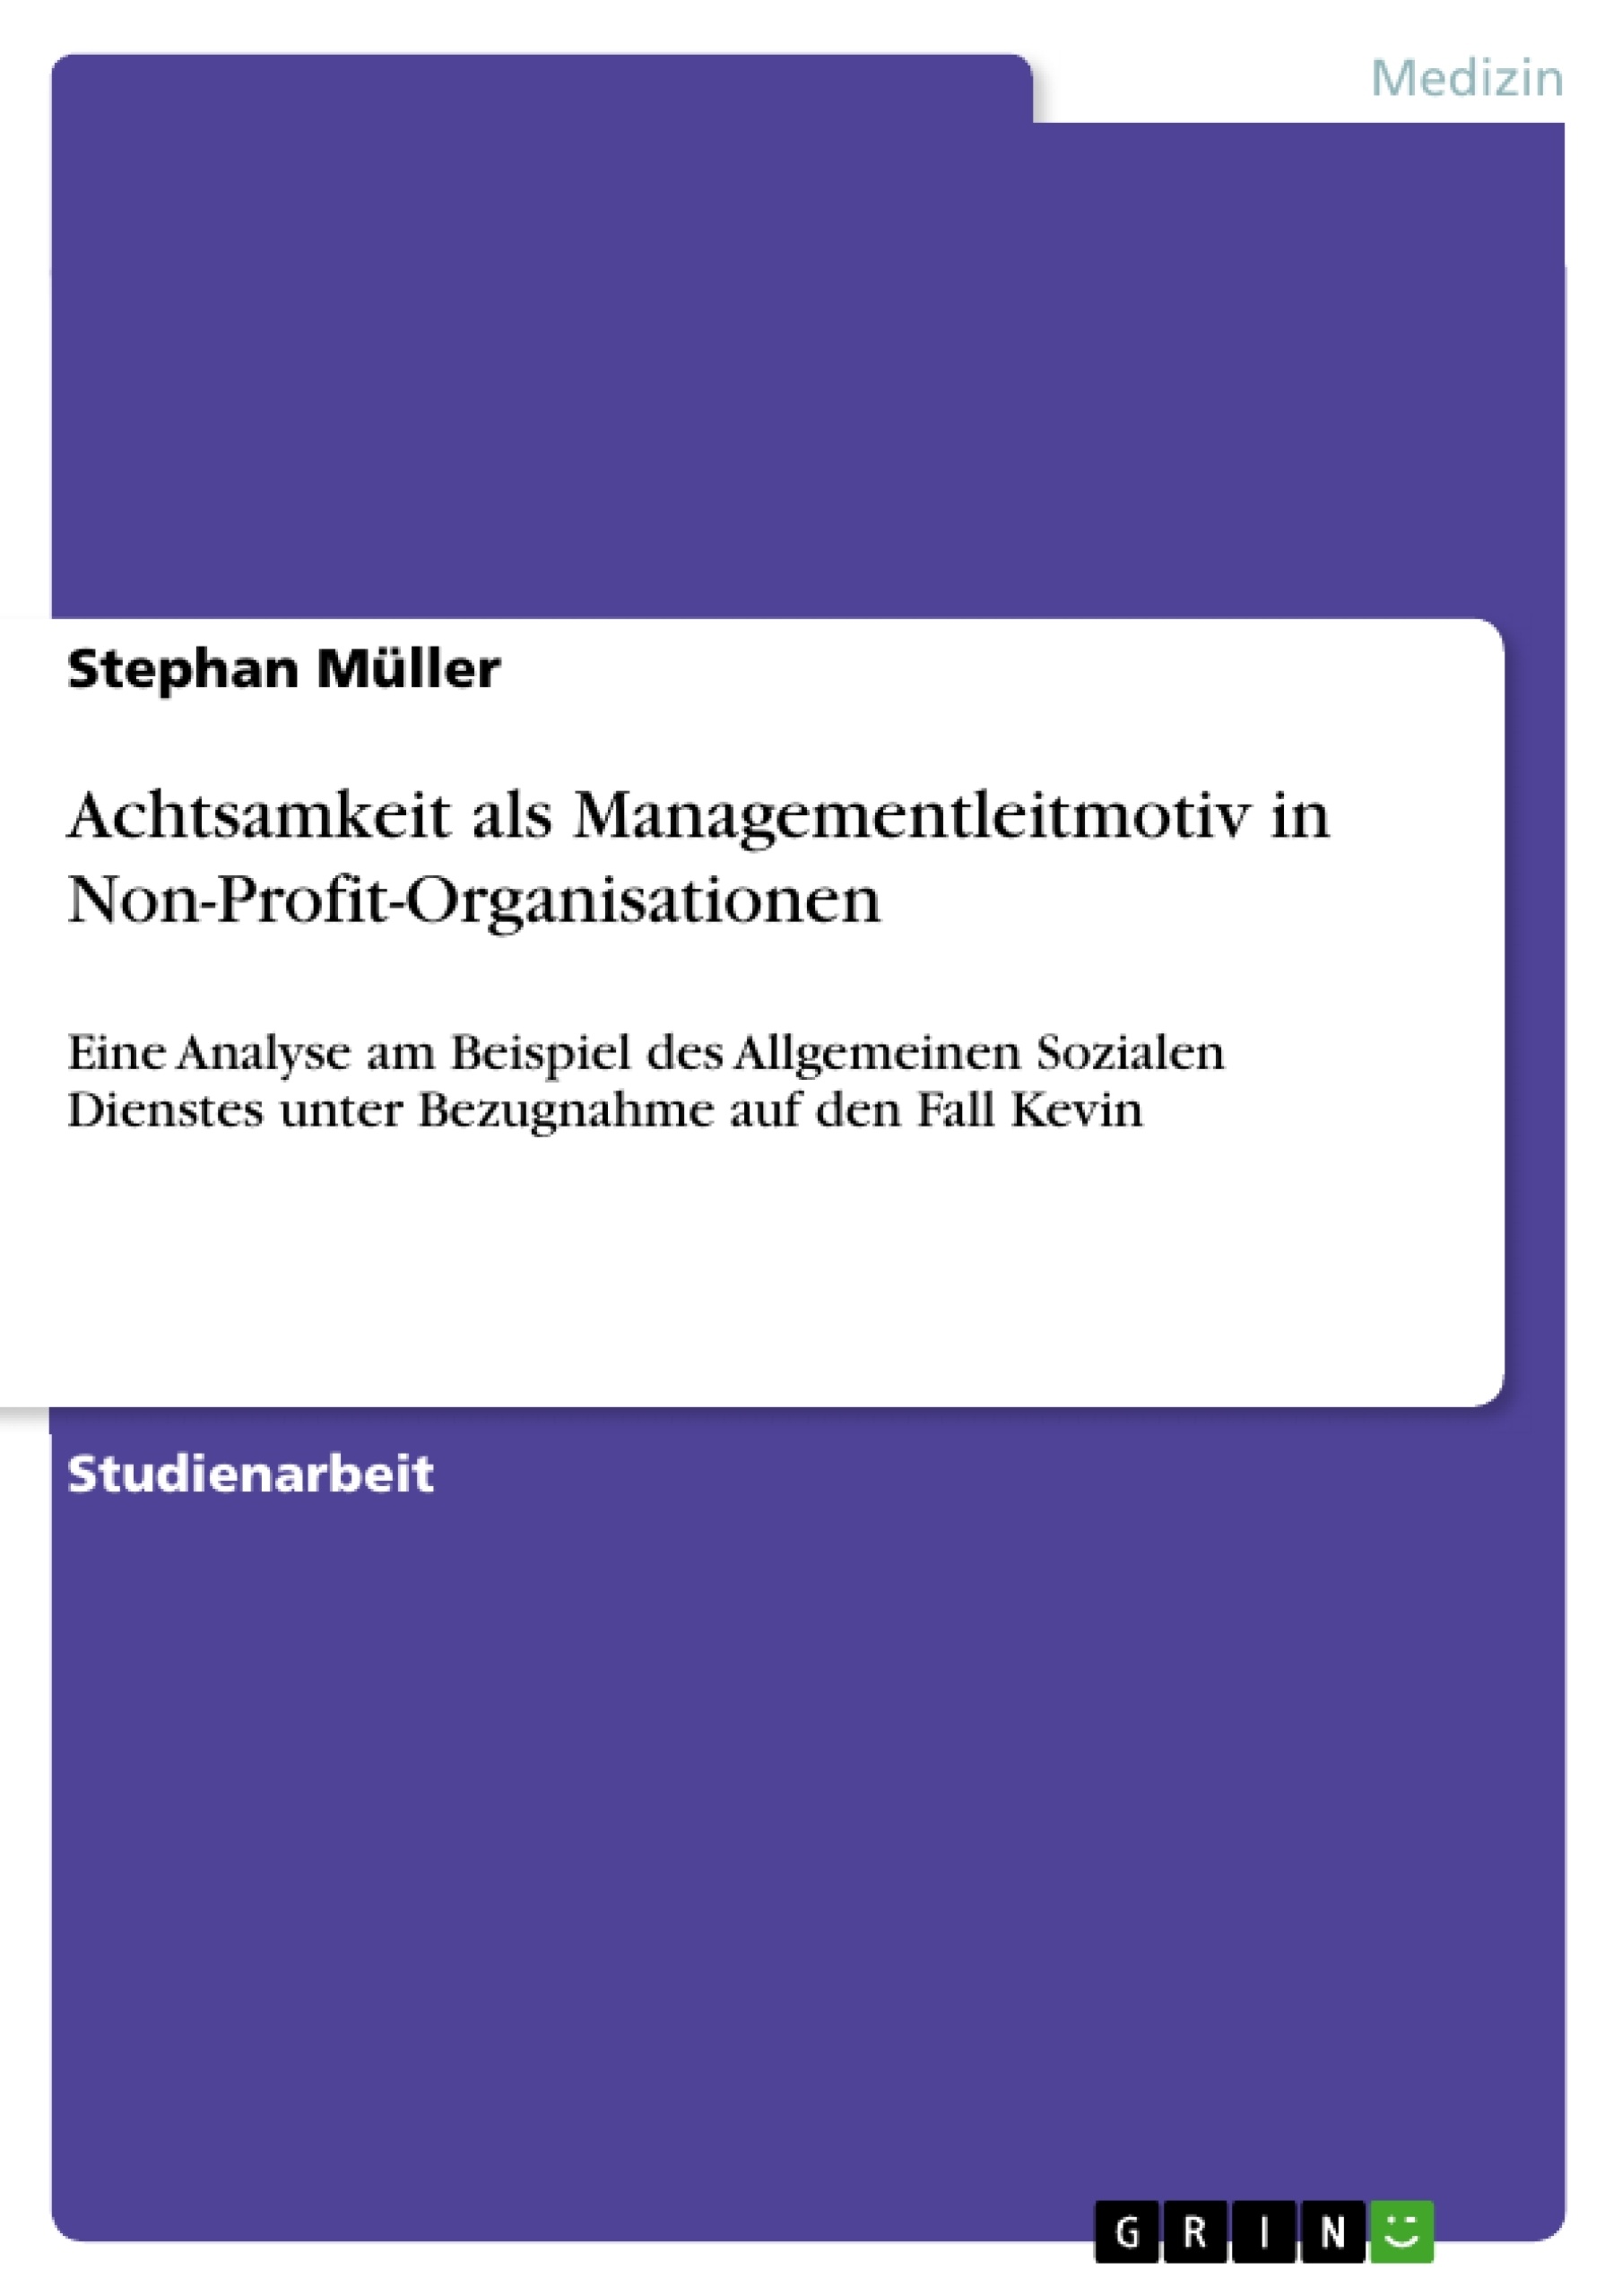 Title: Achtsamkeit als Managementleitmotiv in Non-Profit-Organisationen